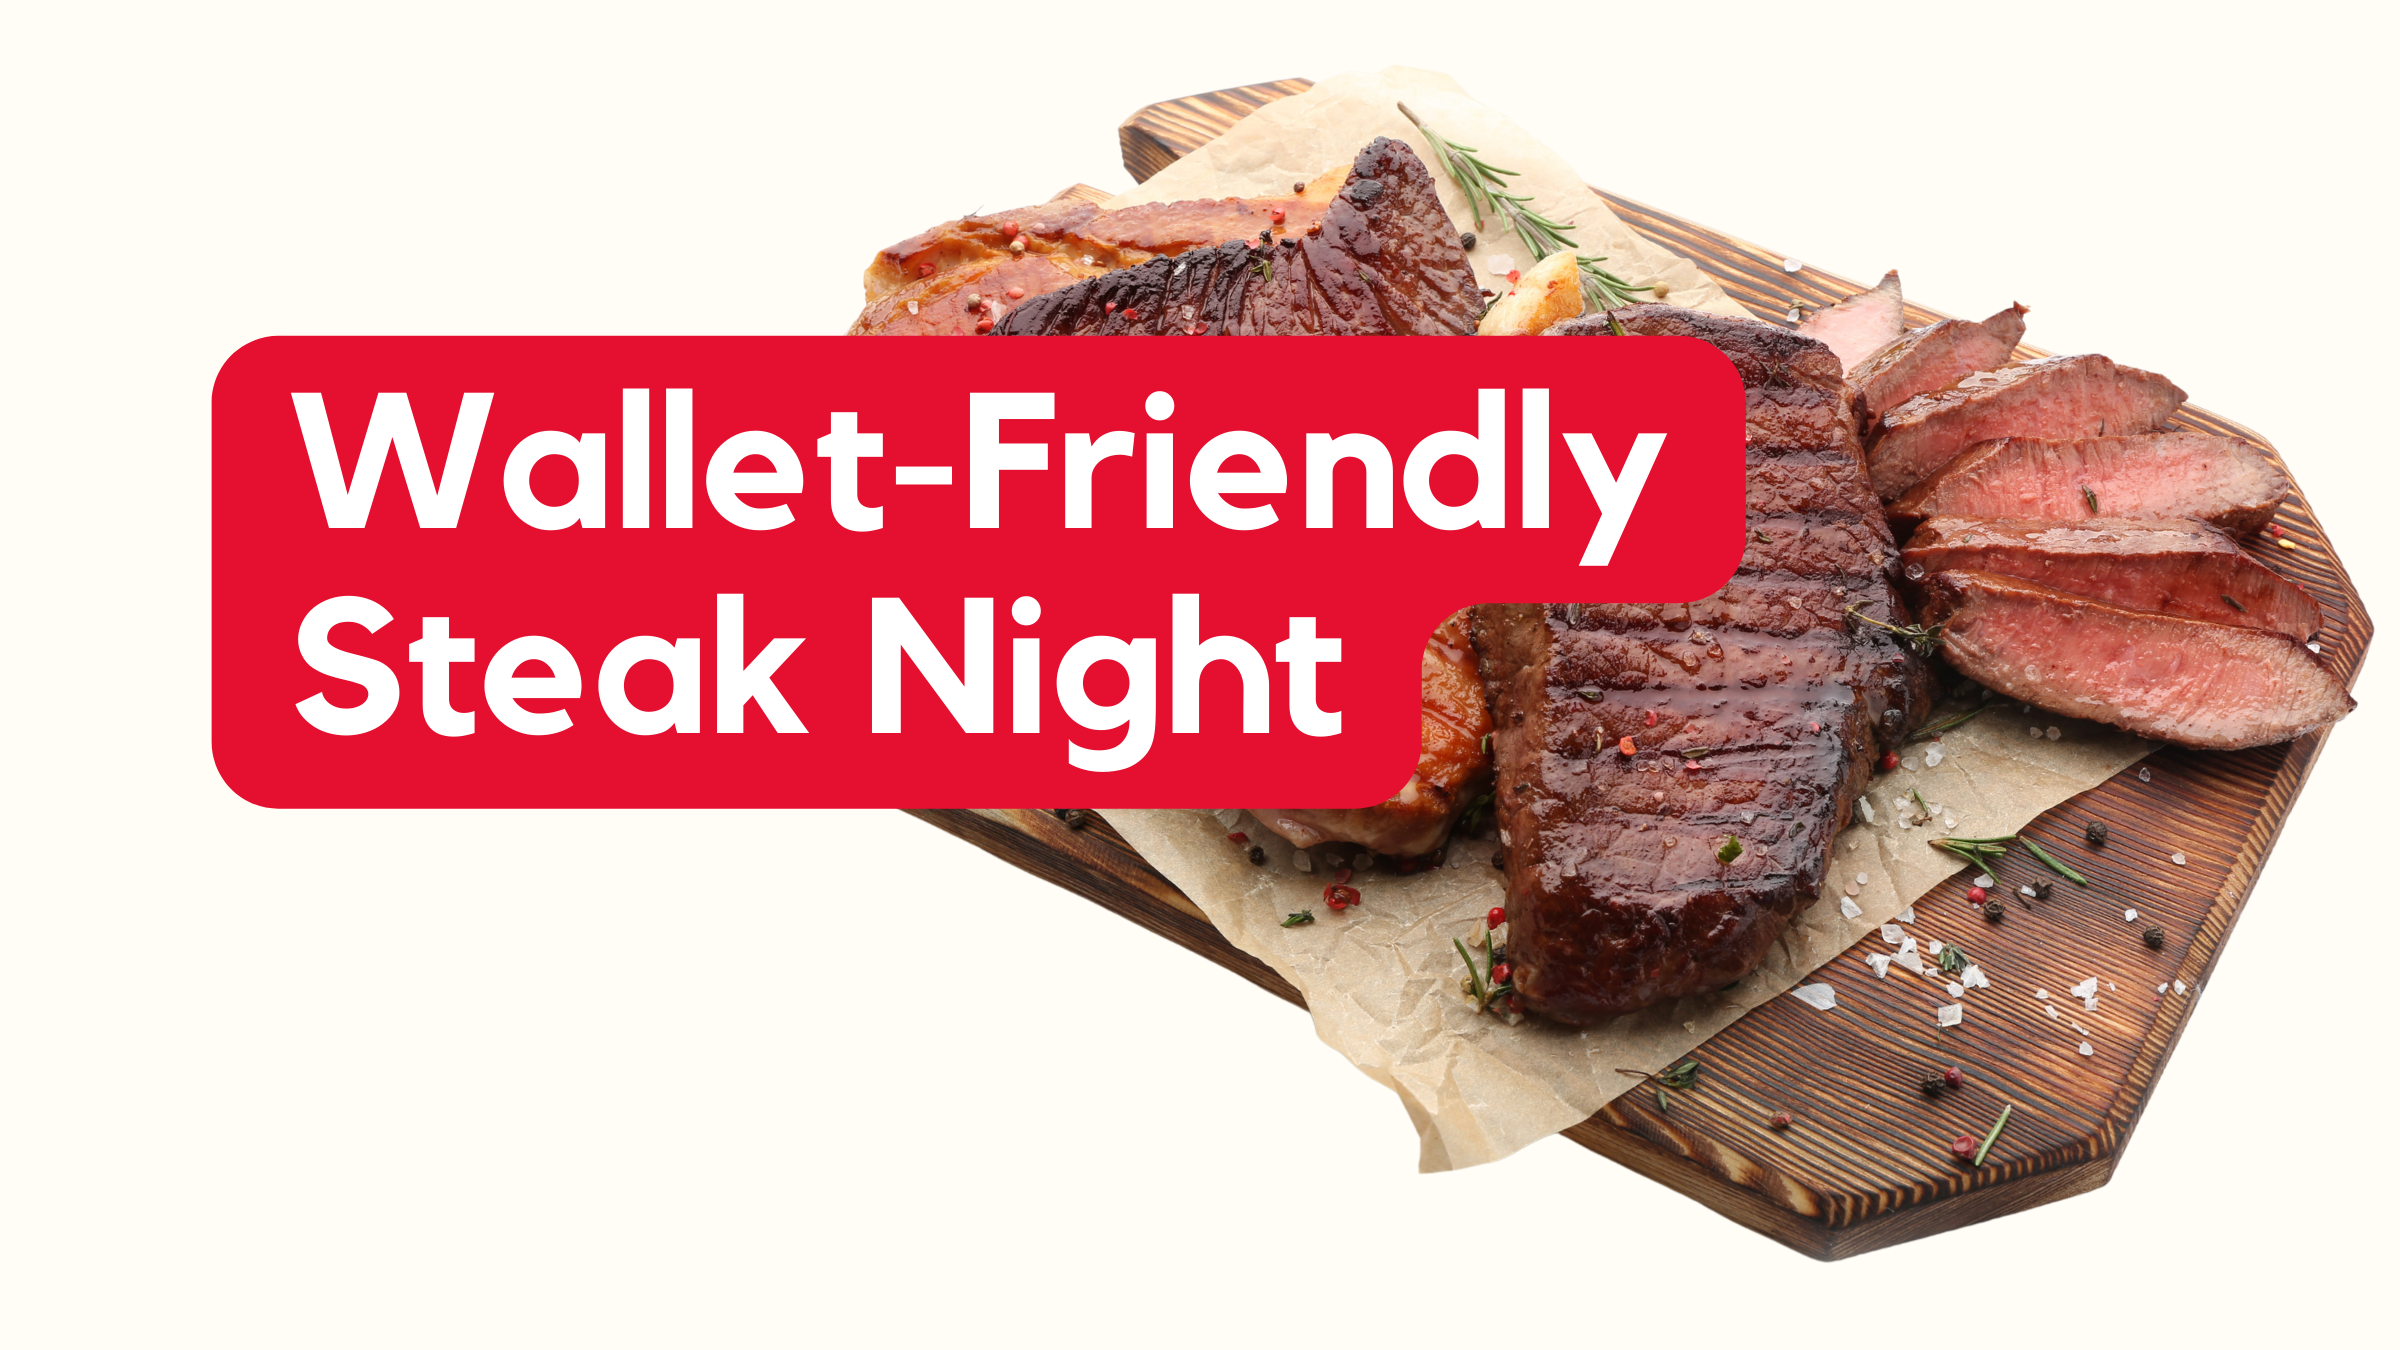 Steak Night for Less